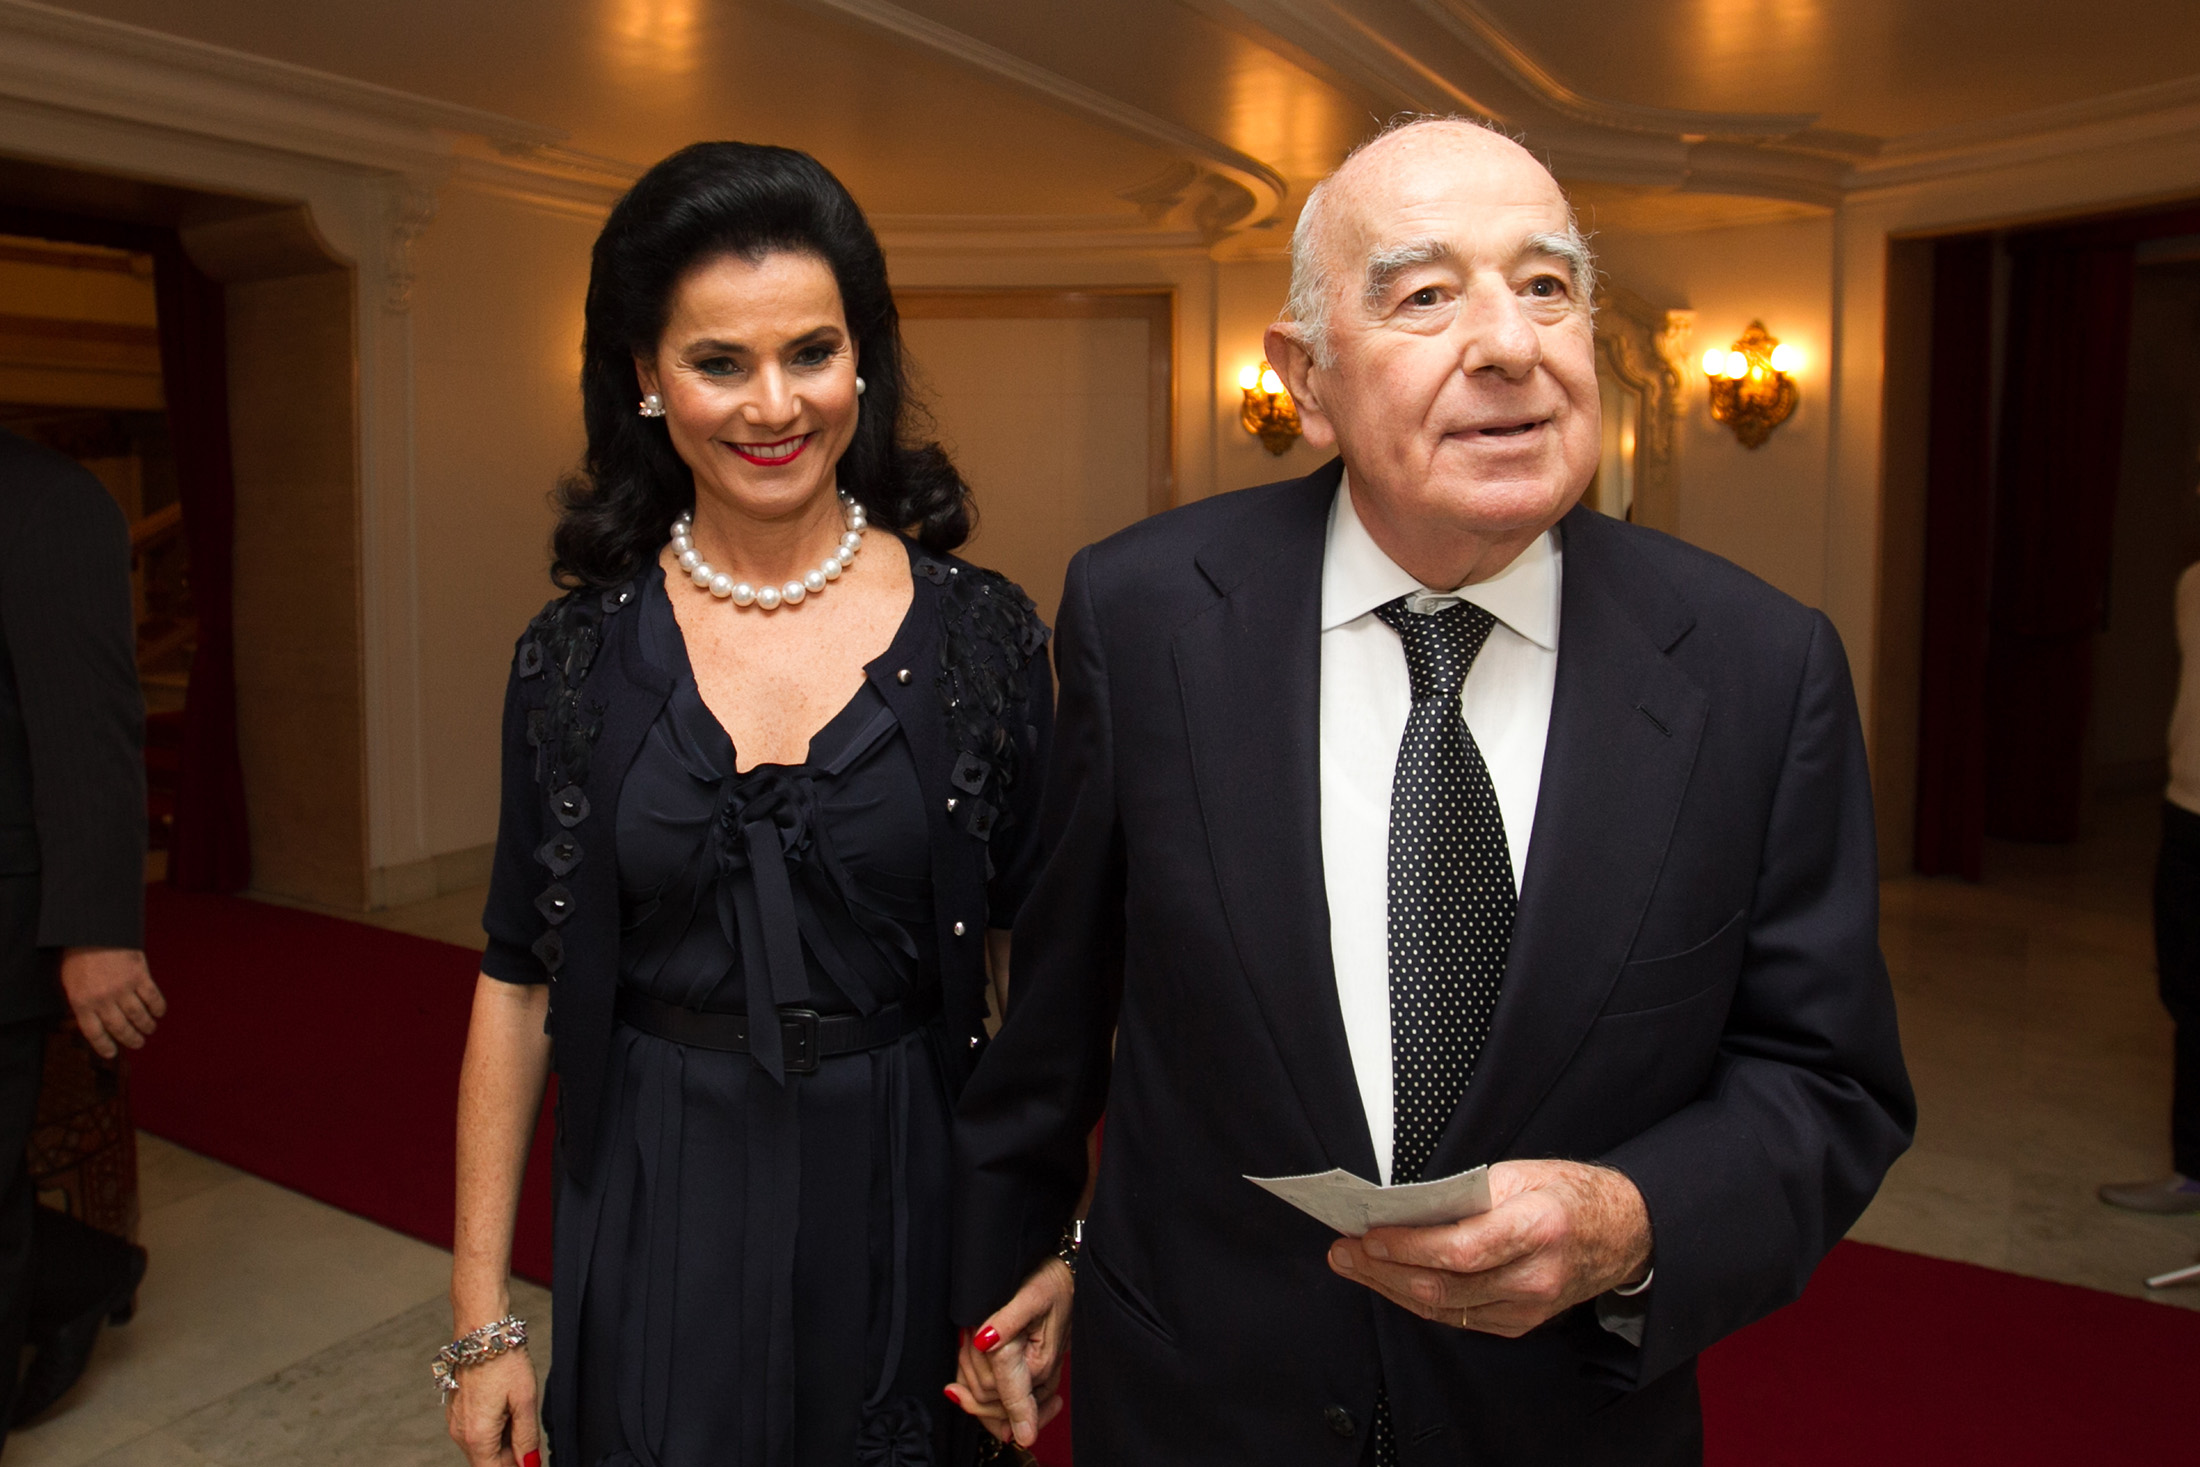 Joseph Safra and Vicky Safra in 2014.